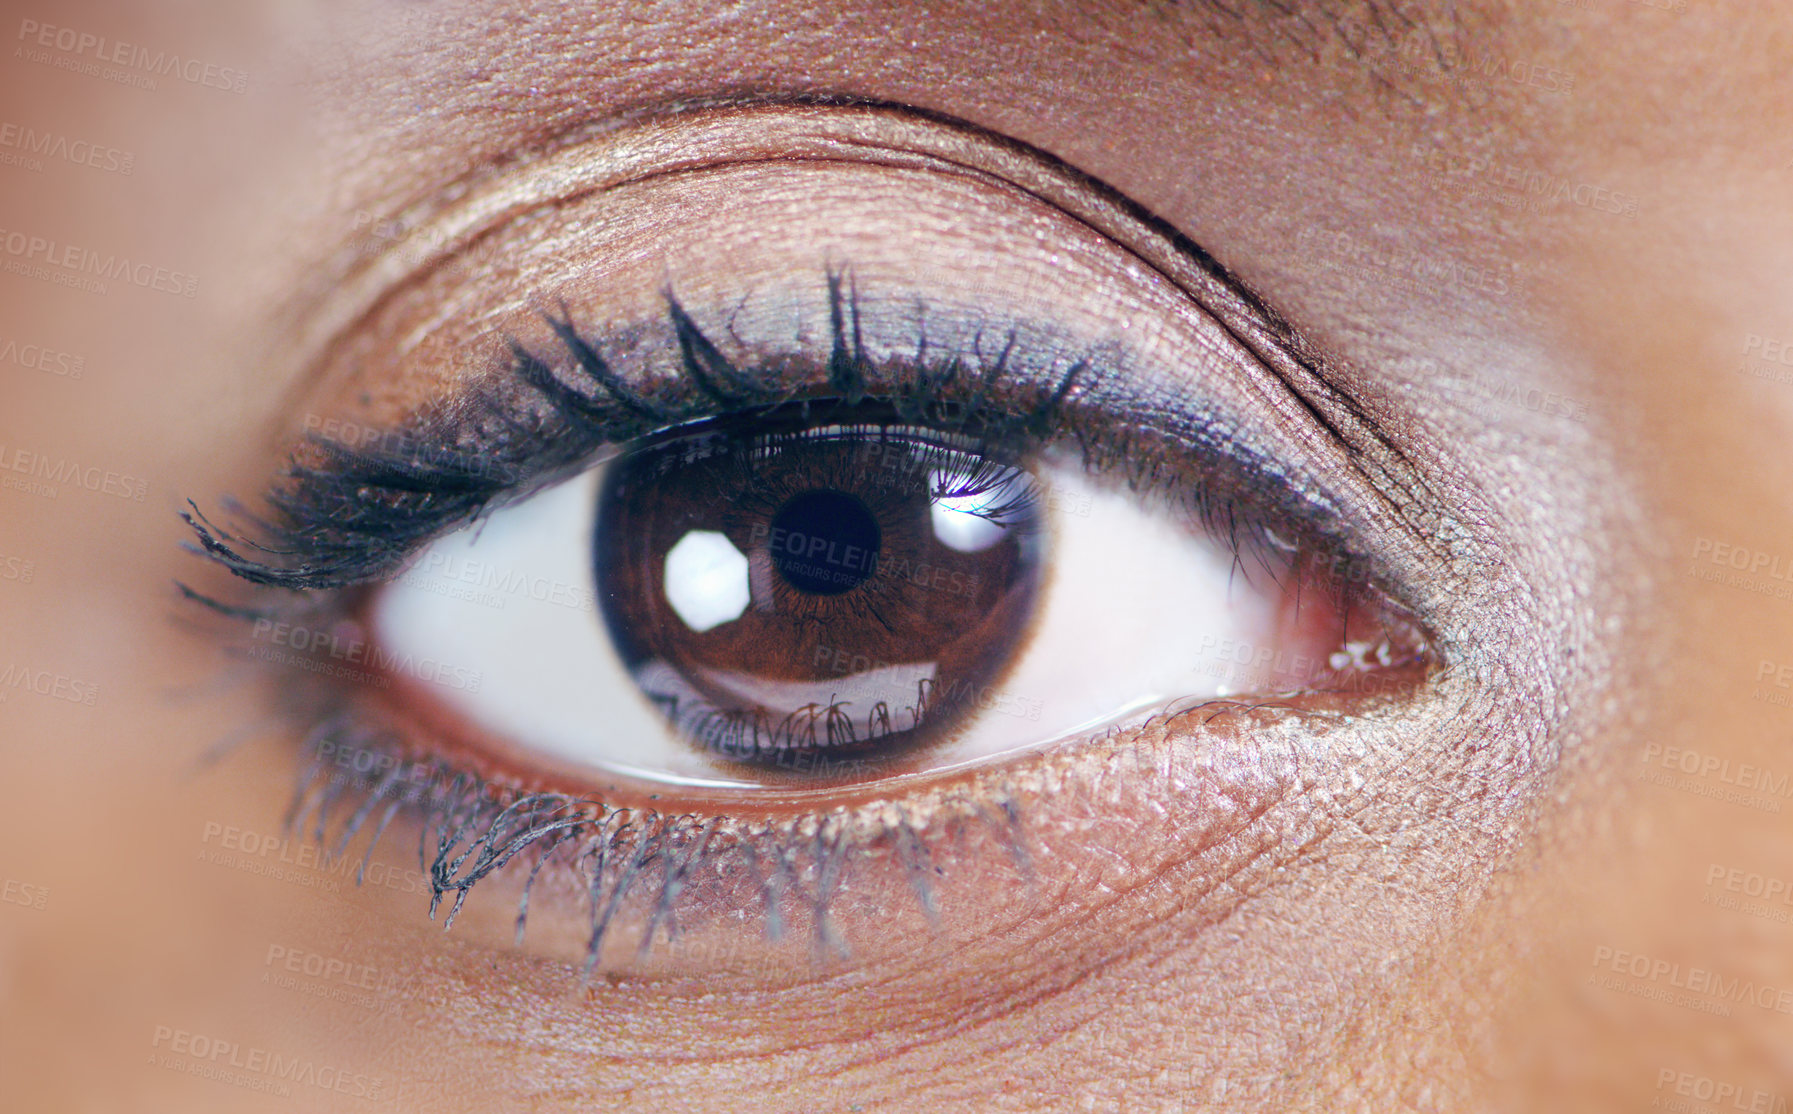 Buy stock photo Closeup beauty shot of a young woman's eye